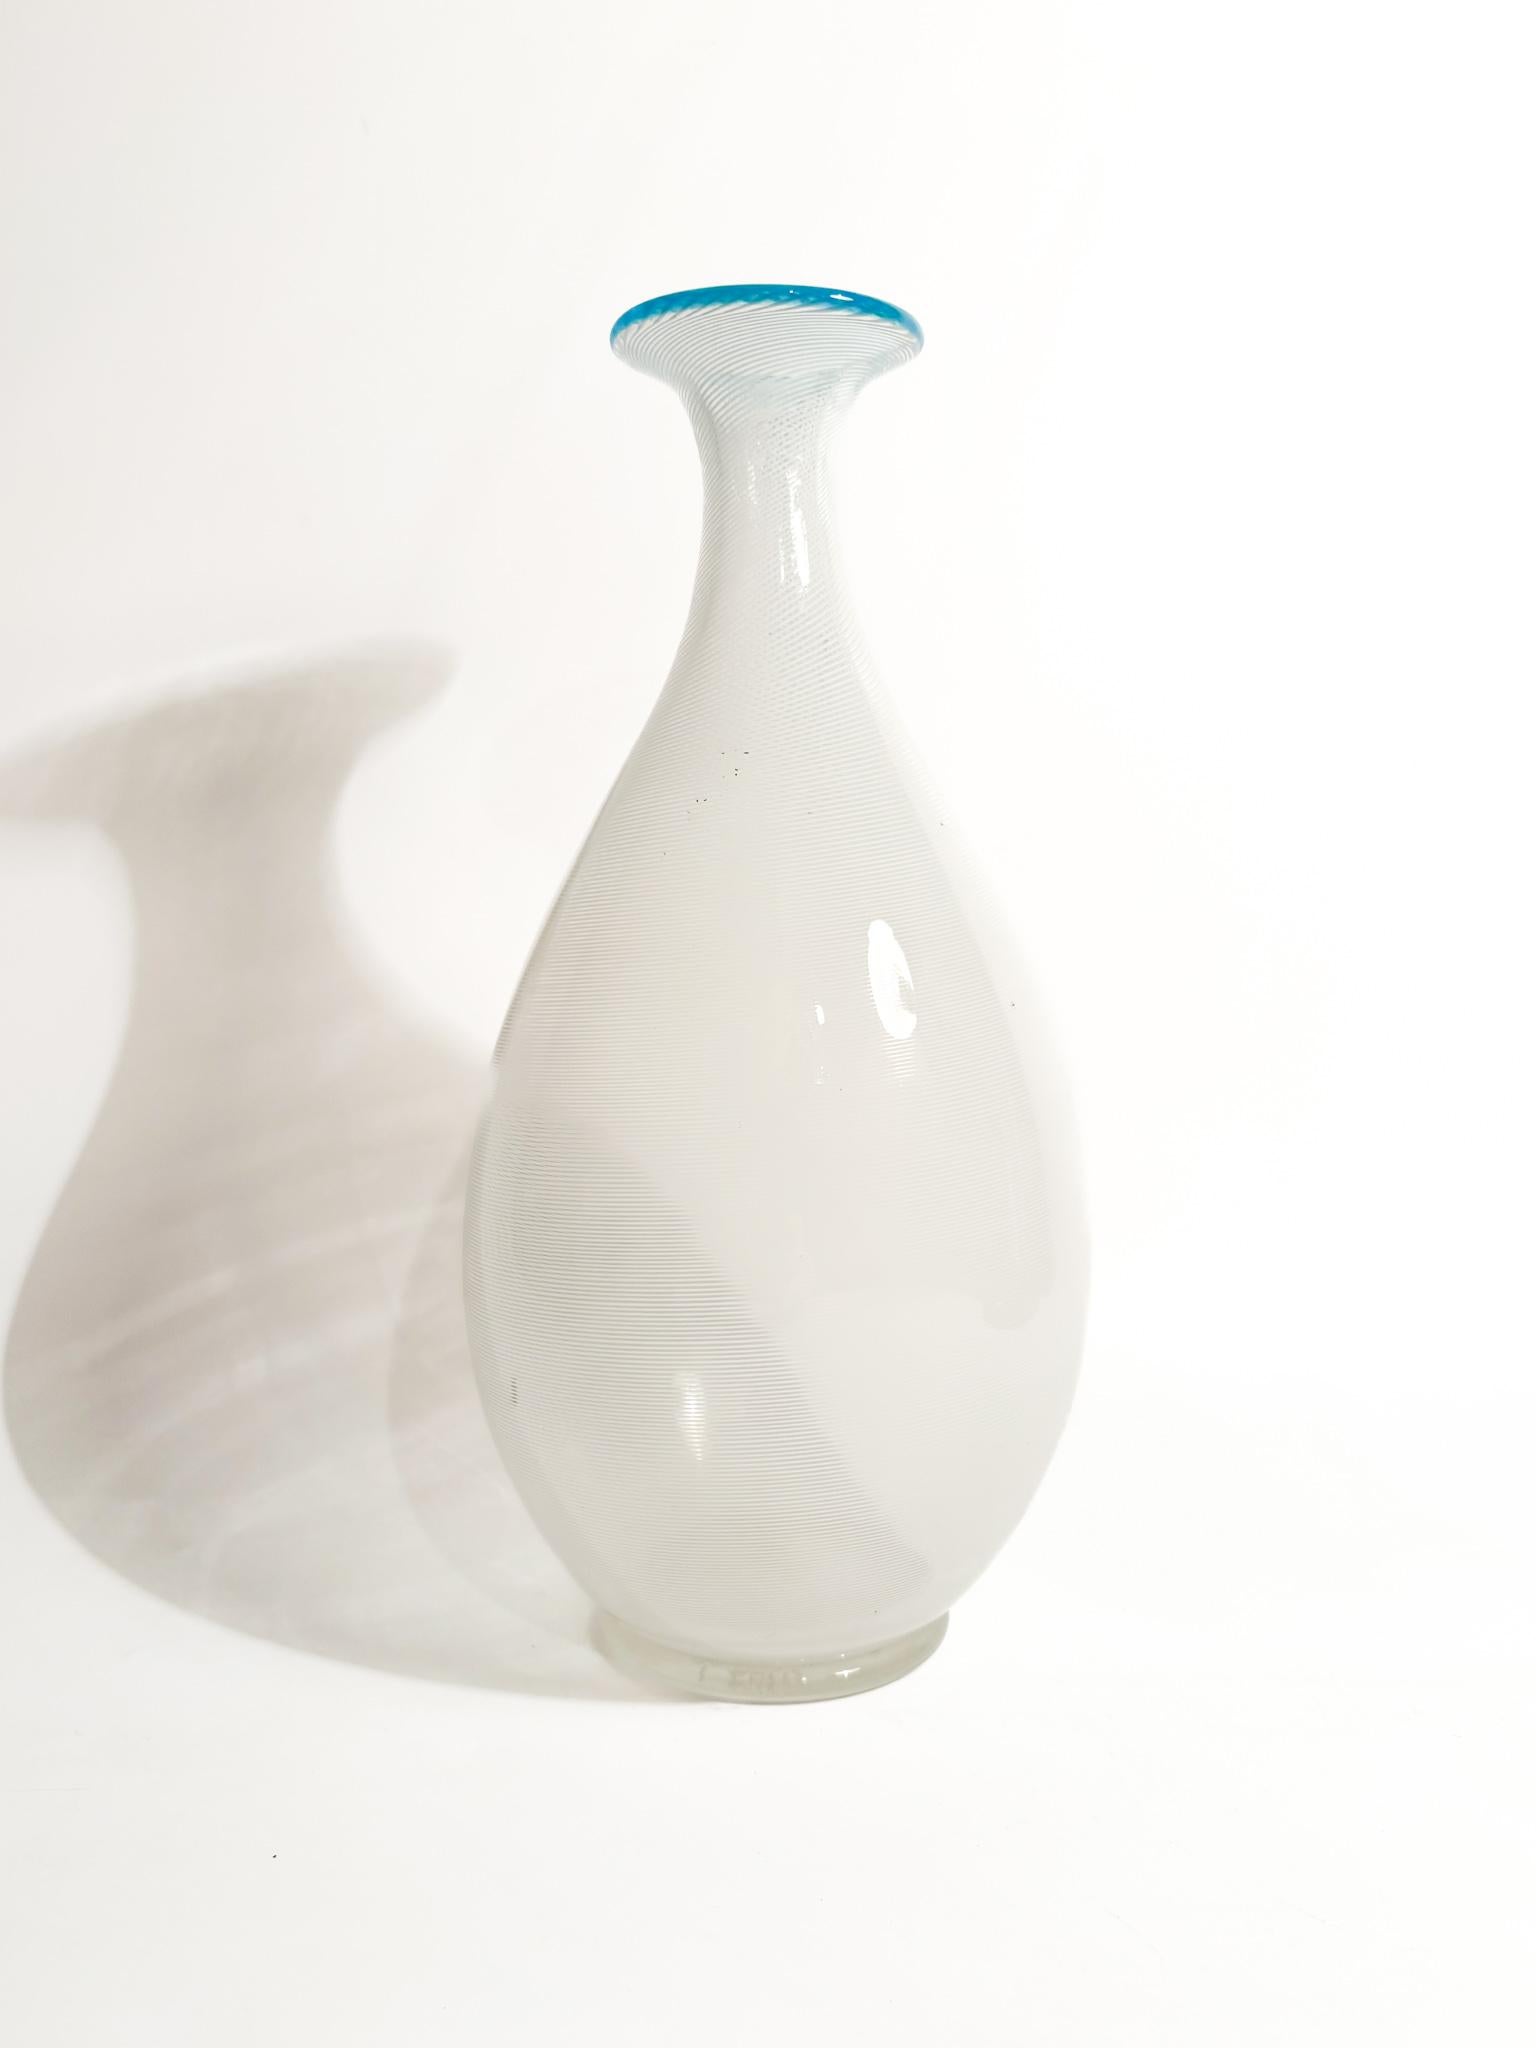 Vase en verre de Murano blanc et bleu clair avec exécution filigrane, fabriqué par Barovier&Toso dans les années 1950.

Ø 11 cm h 25,5 cm

Barovier&Toso est une entreprise italienne de renom spécialisée dans les luminaires de luxe en verre de